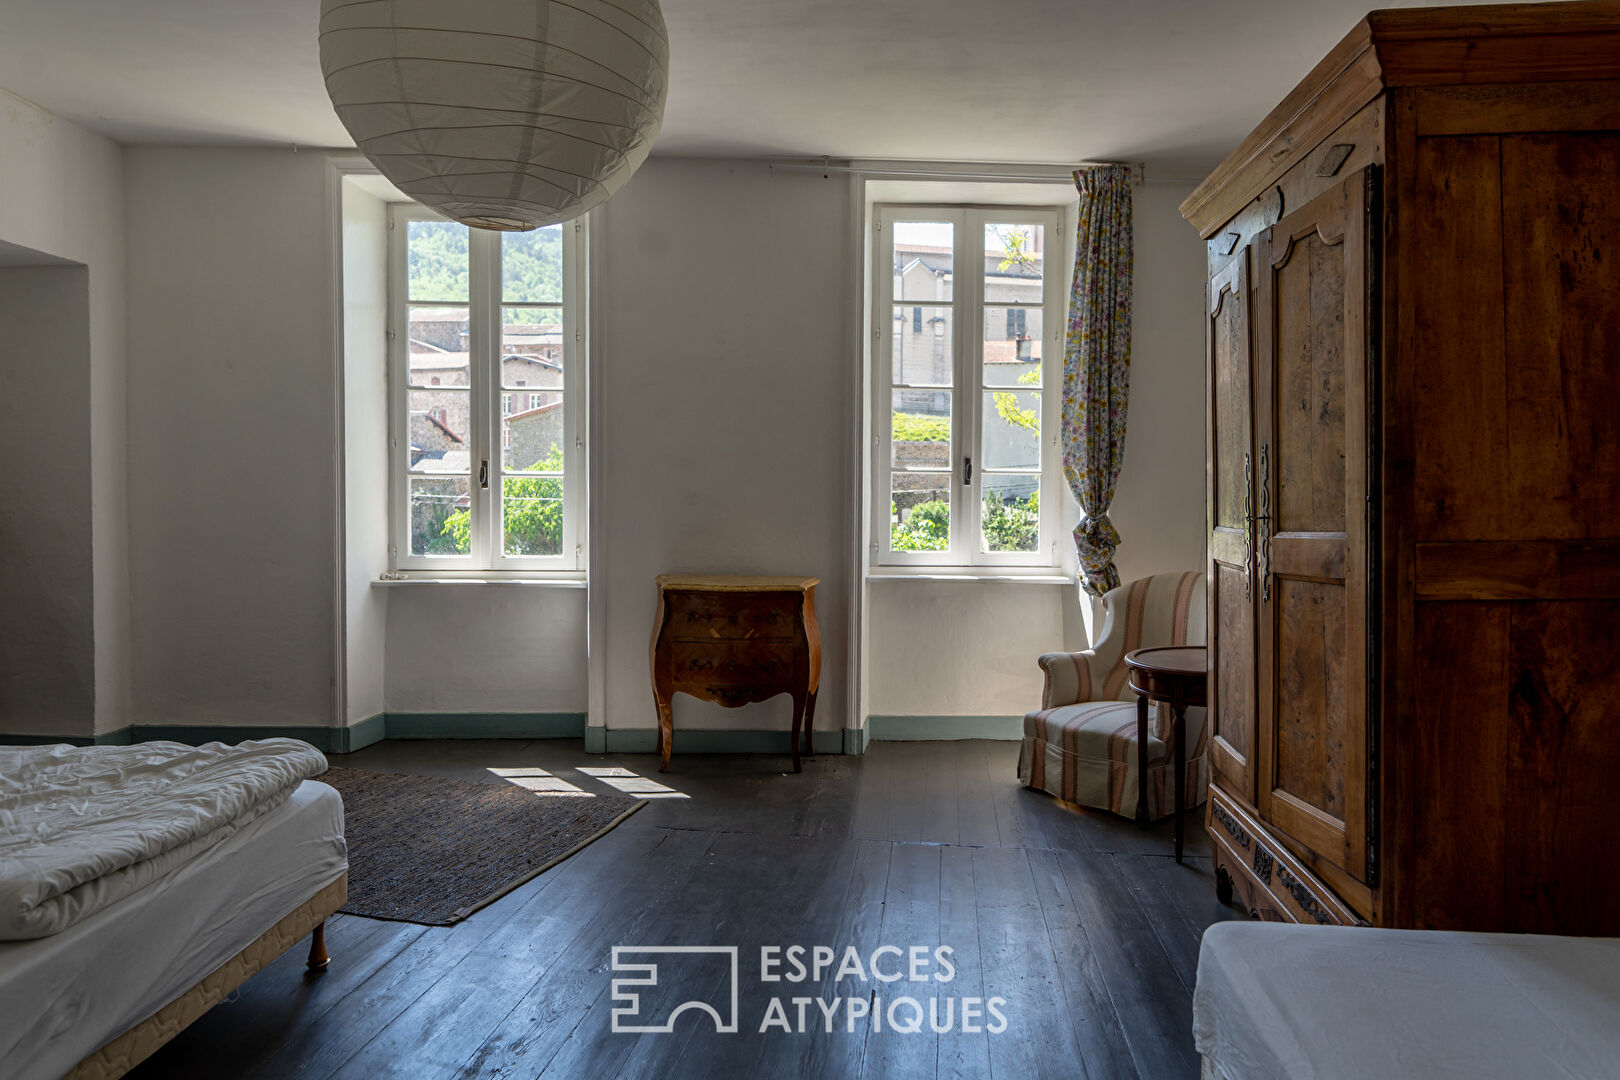 Exceptionnel en Ardèche verte cet hôtel particulier du 17ème siècle est  propice à de nombreux projets.